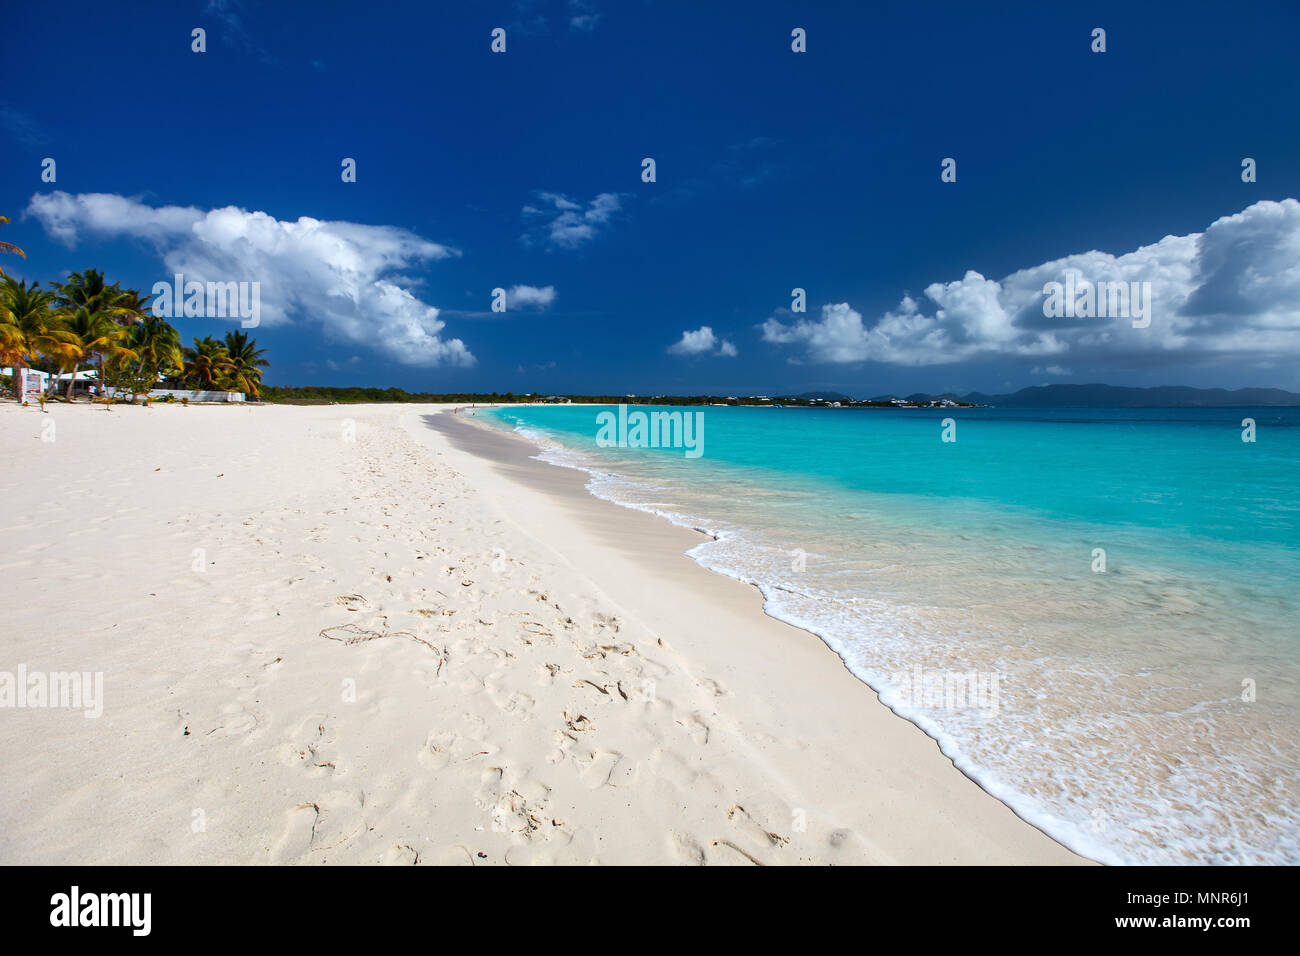 Belle plage tropicale sur l'île d'Anguilla, Caraïbes Banque D'Images